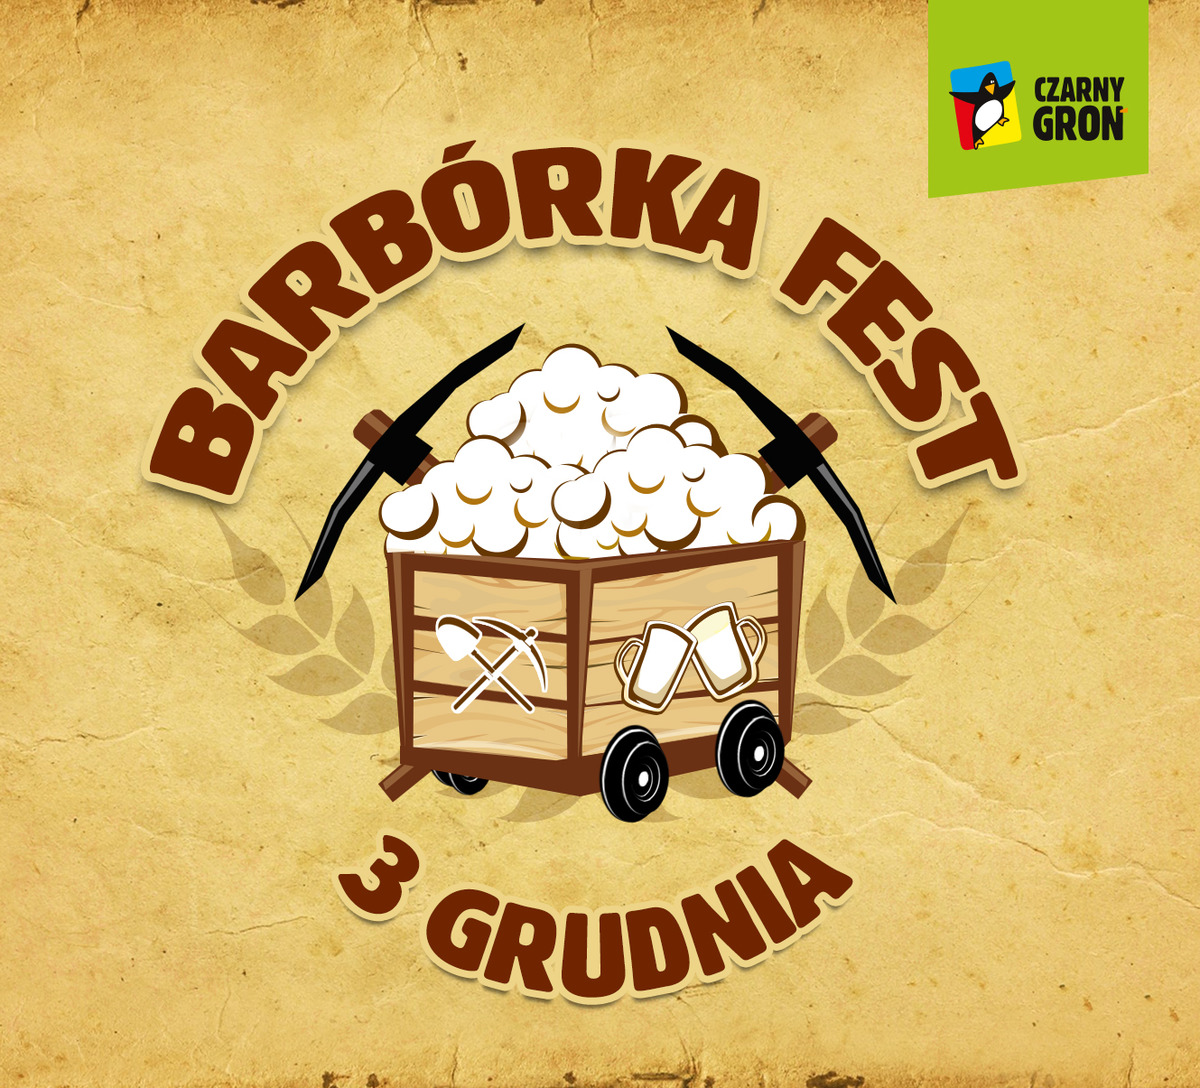 Impreza BARBÓRKA FEST już 3 grudnia w Czarnym Groniu!